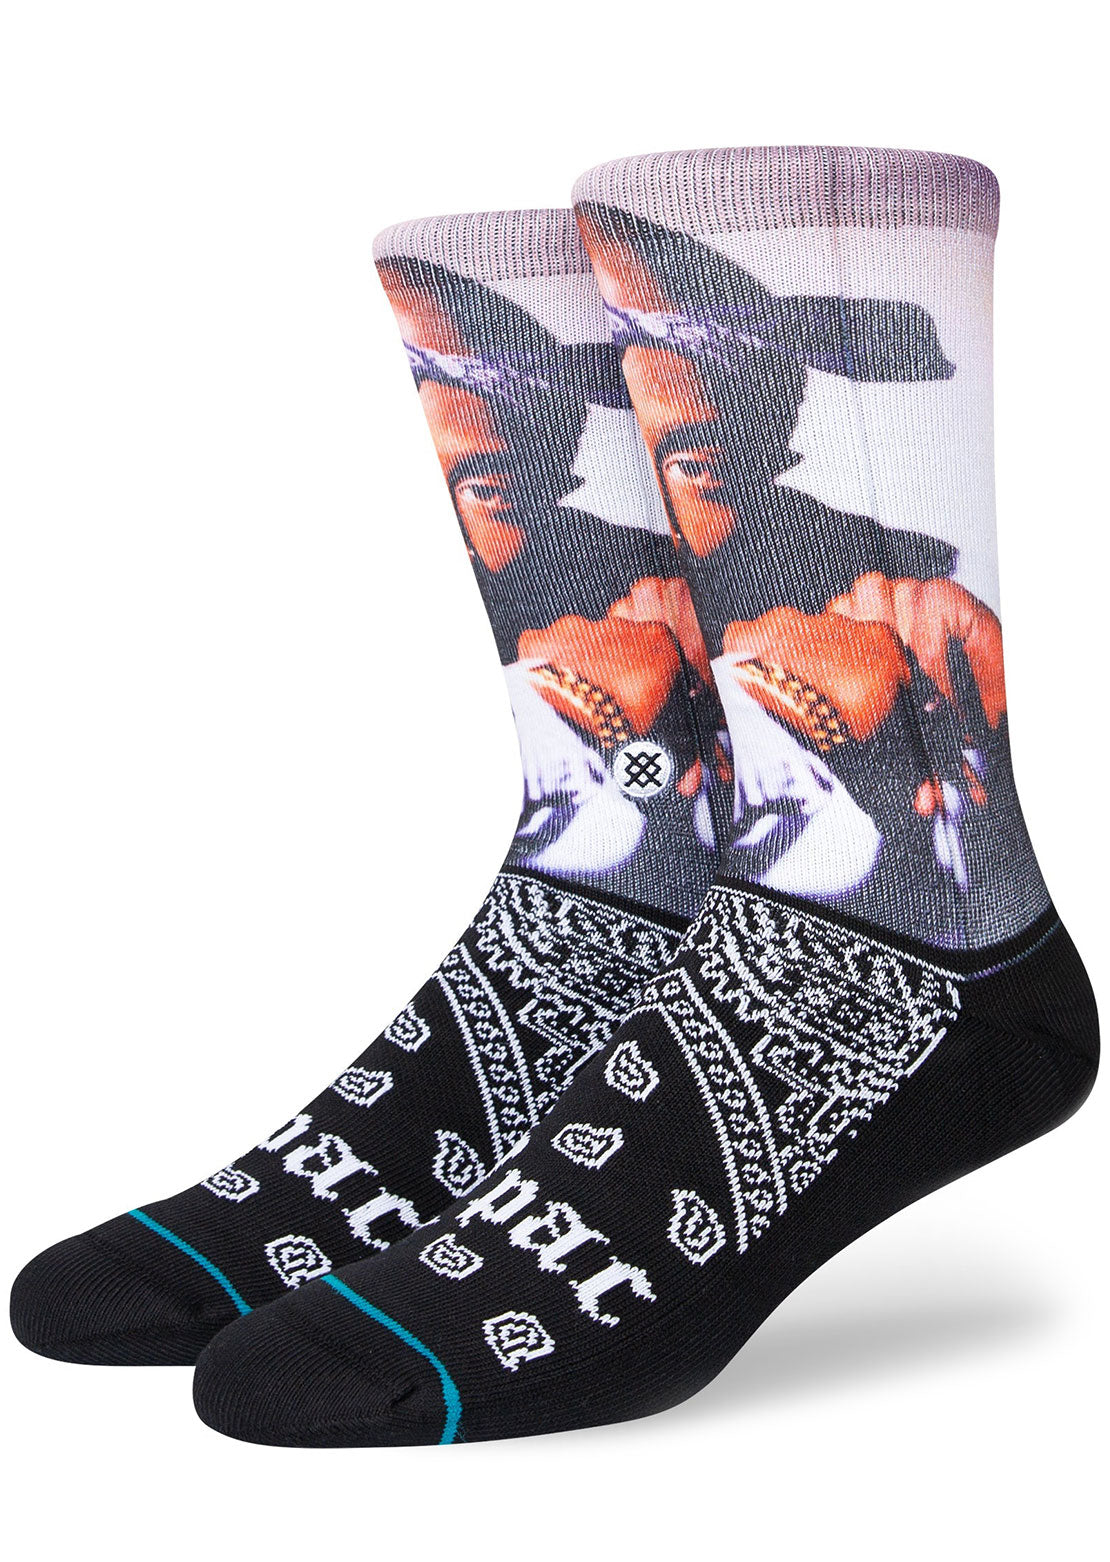 Stance Unisex Msp Tupac Makaveli Socks Black